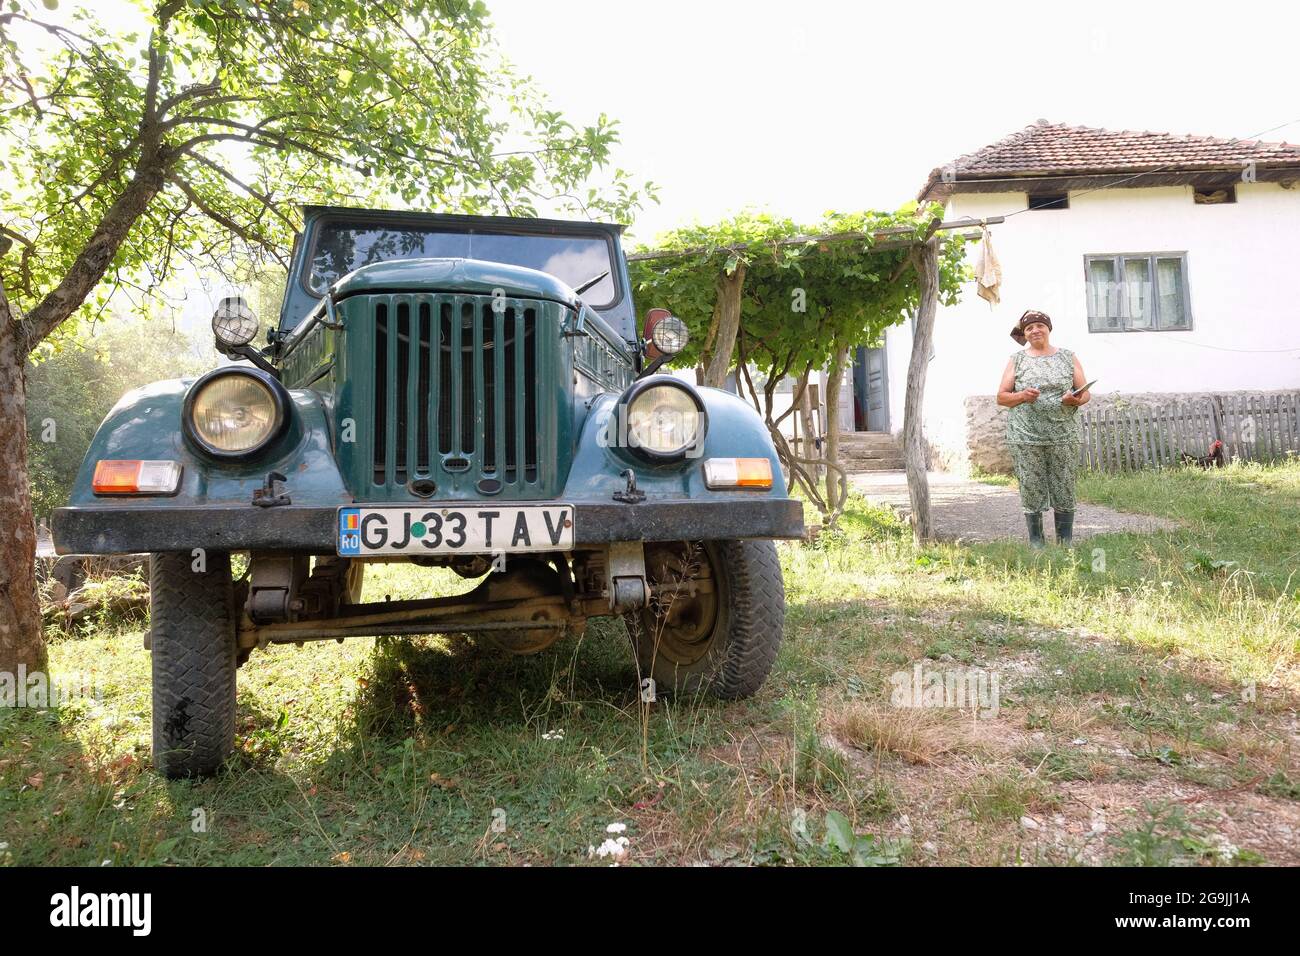 PADES, ROUMANIE - JUILLET 27: Une ancienne M461 ARO - la jeep roumaine - dans un fonds rural de Cerna Sat, en arrière-plan une paysanne devant sa ferme Banque D'Images